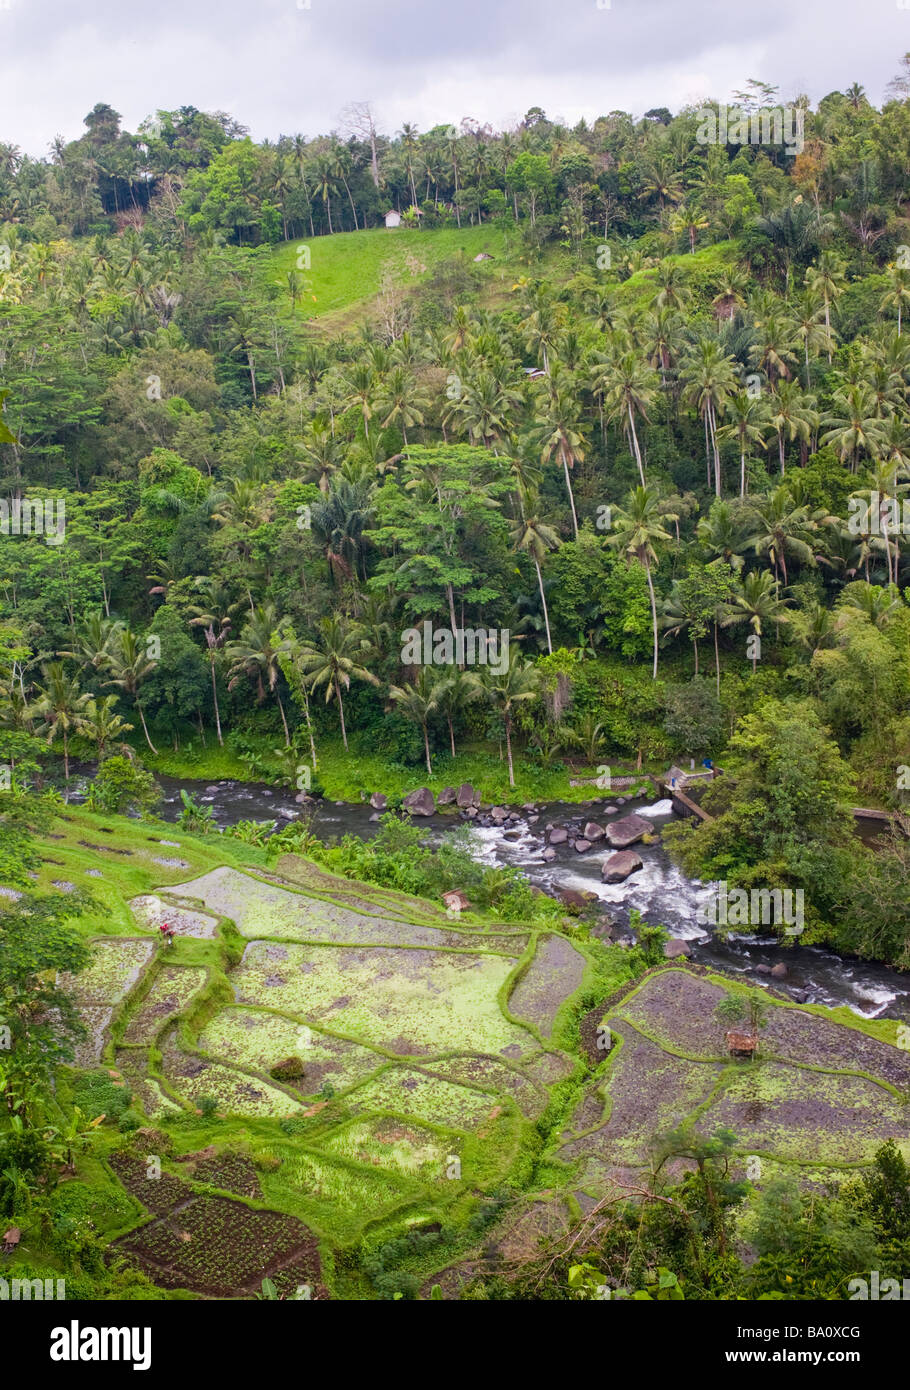 Vue panoramique sur la vallée, les rizières et la rivière Ayung - Ubud, Bali, Indonésie Banque D'Images